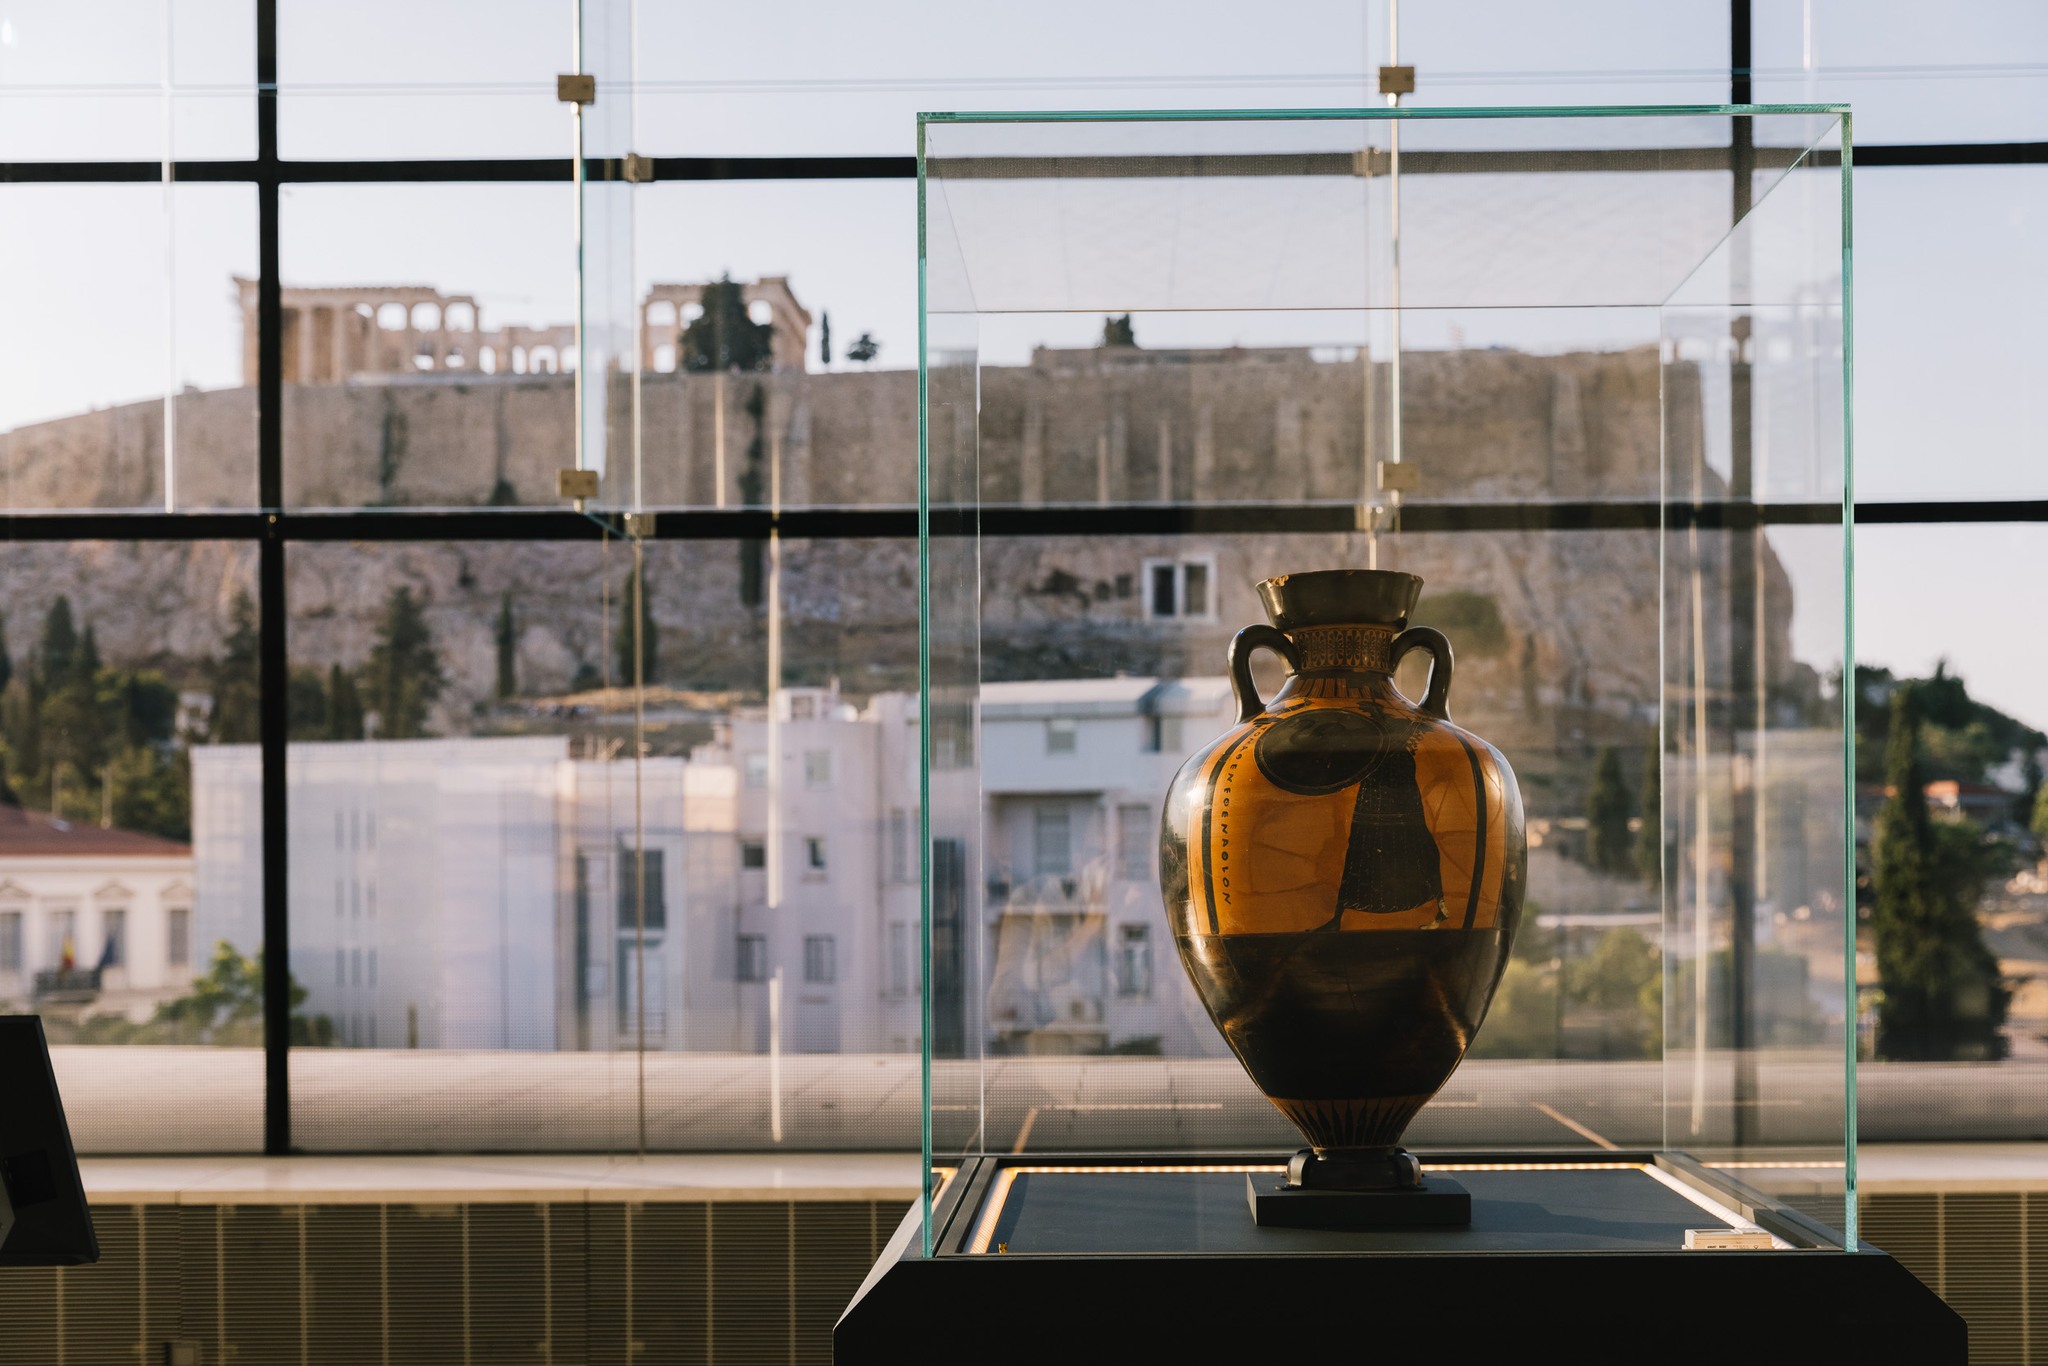 Ανακοίνωση – Μουσείου Ακρόπολης: “Πολιτισμός δεν είναι μόνον οι αρχαιότητες και τα έργα Τέχνης. Πολιτισμός είναι και οι σχέσεις και οι συμπεριφορές των ανθρώπων”